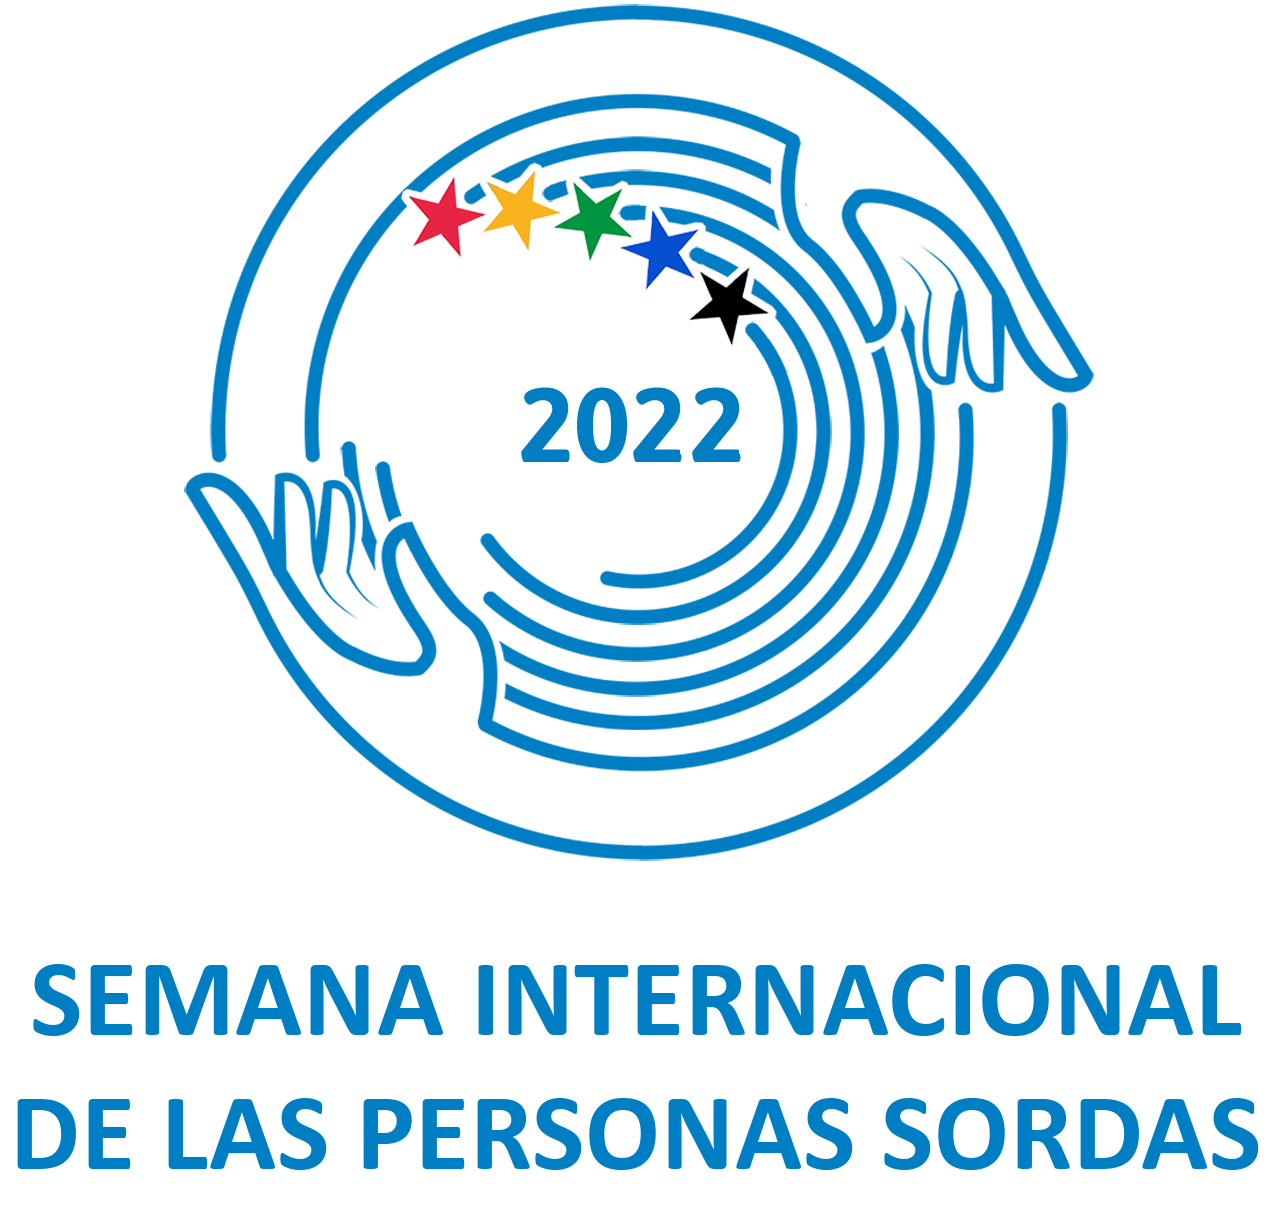 Logo de la Semana Internacional de las Personas Sordas 2022.